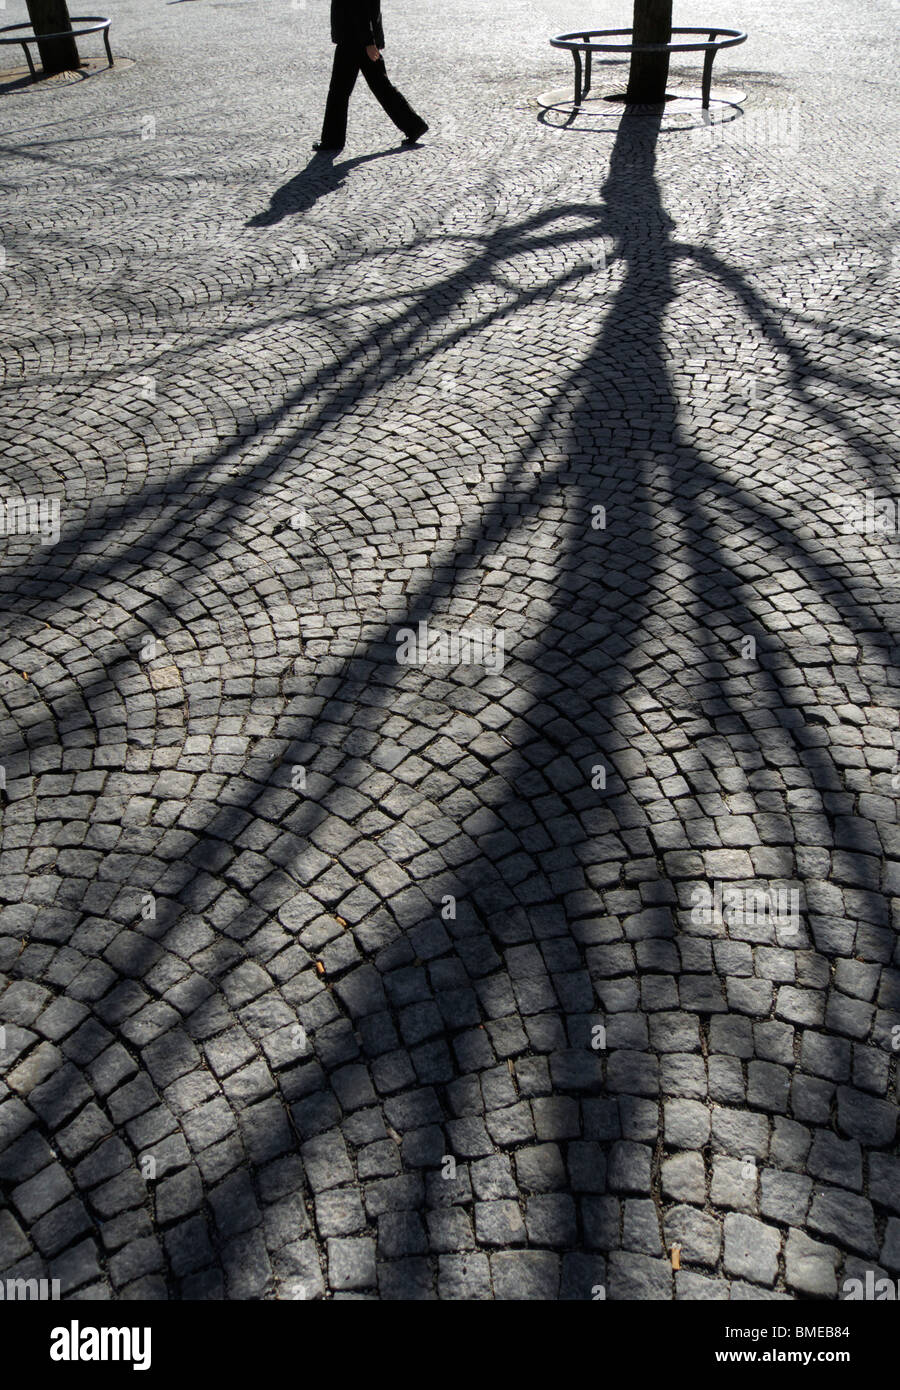 Schatten Sie eines Baumes auf Kopfsteinpflaster Steinpflaster, unteren Sie Extremitäten einer Person zu Fuß, Platz, Karlsplatz Stuttgart, Deutschland Stockfoto